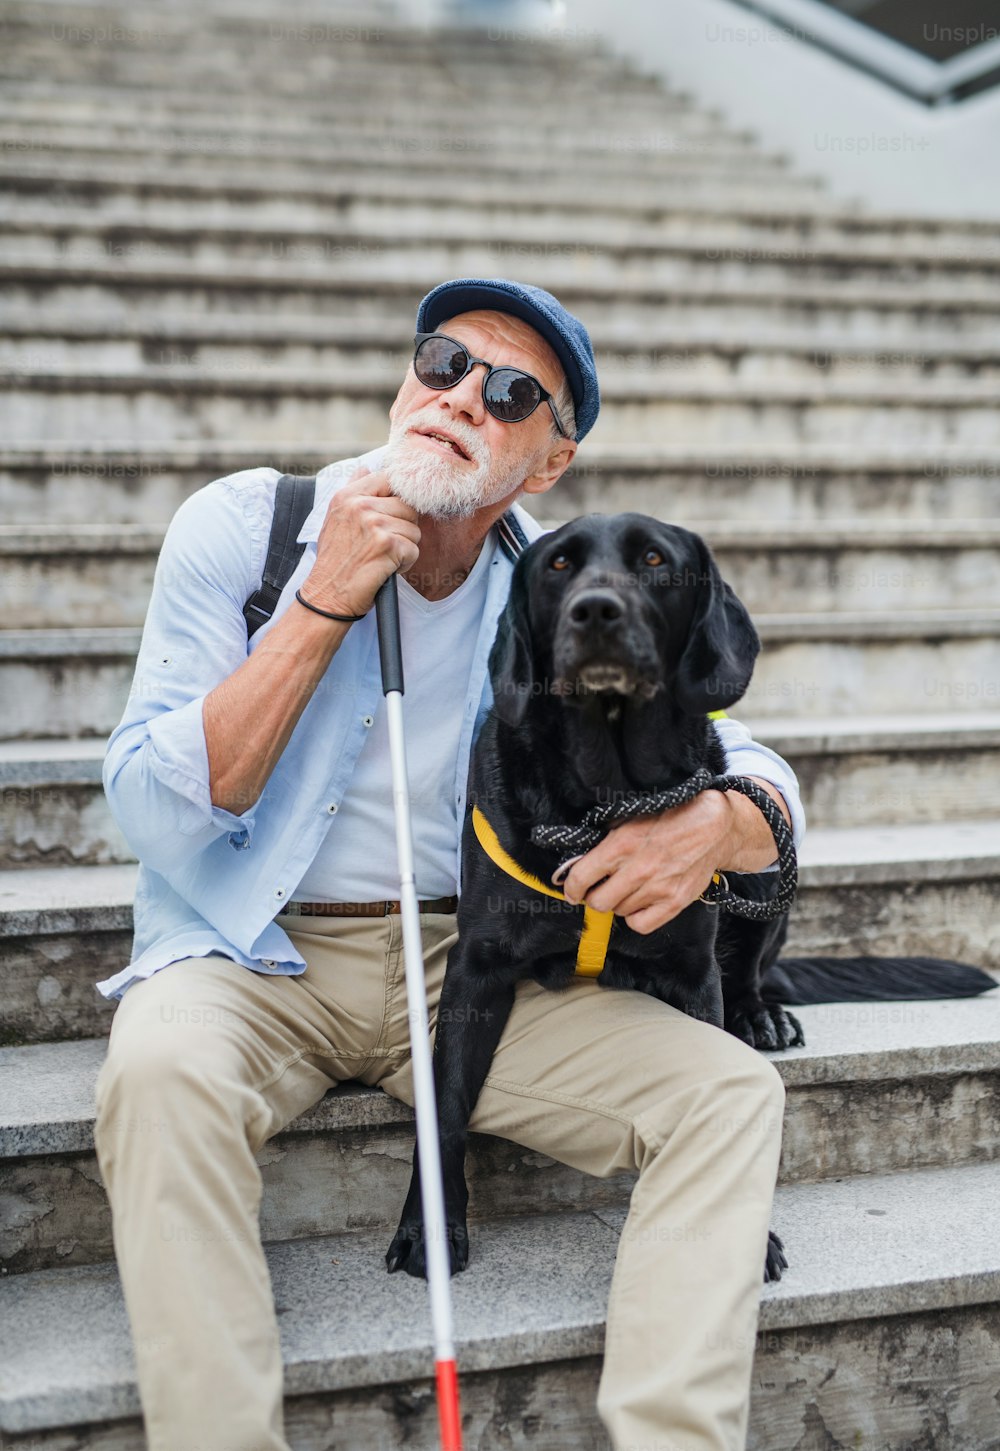 Vista frontal del ciego mayor con perro guía sentado en las escaleras de la ciudad, descansando.